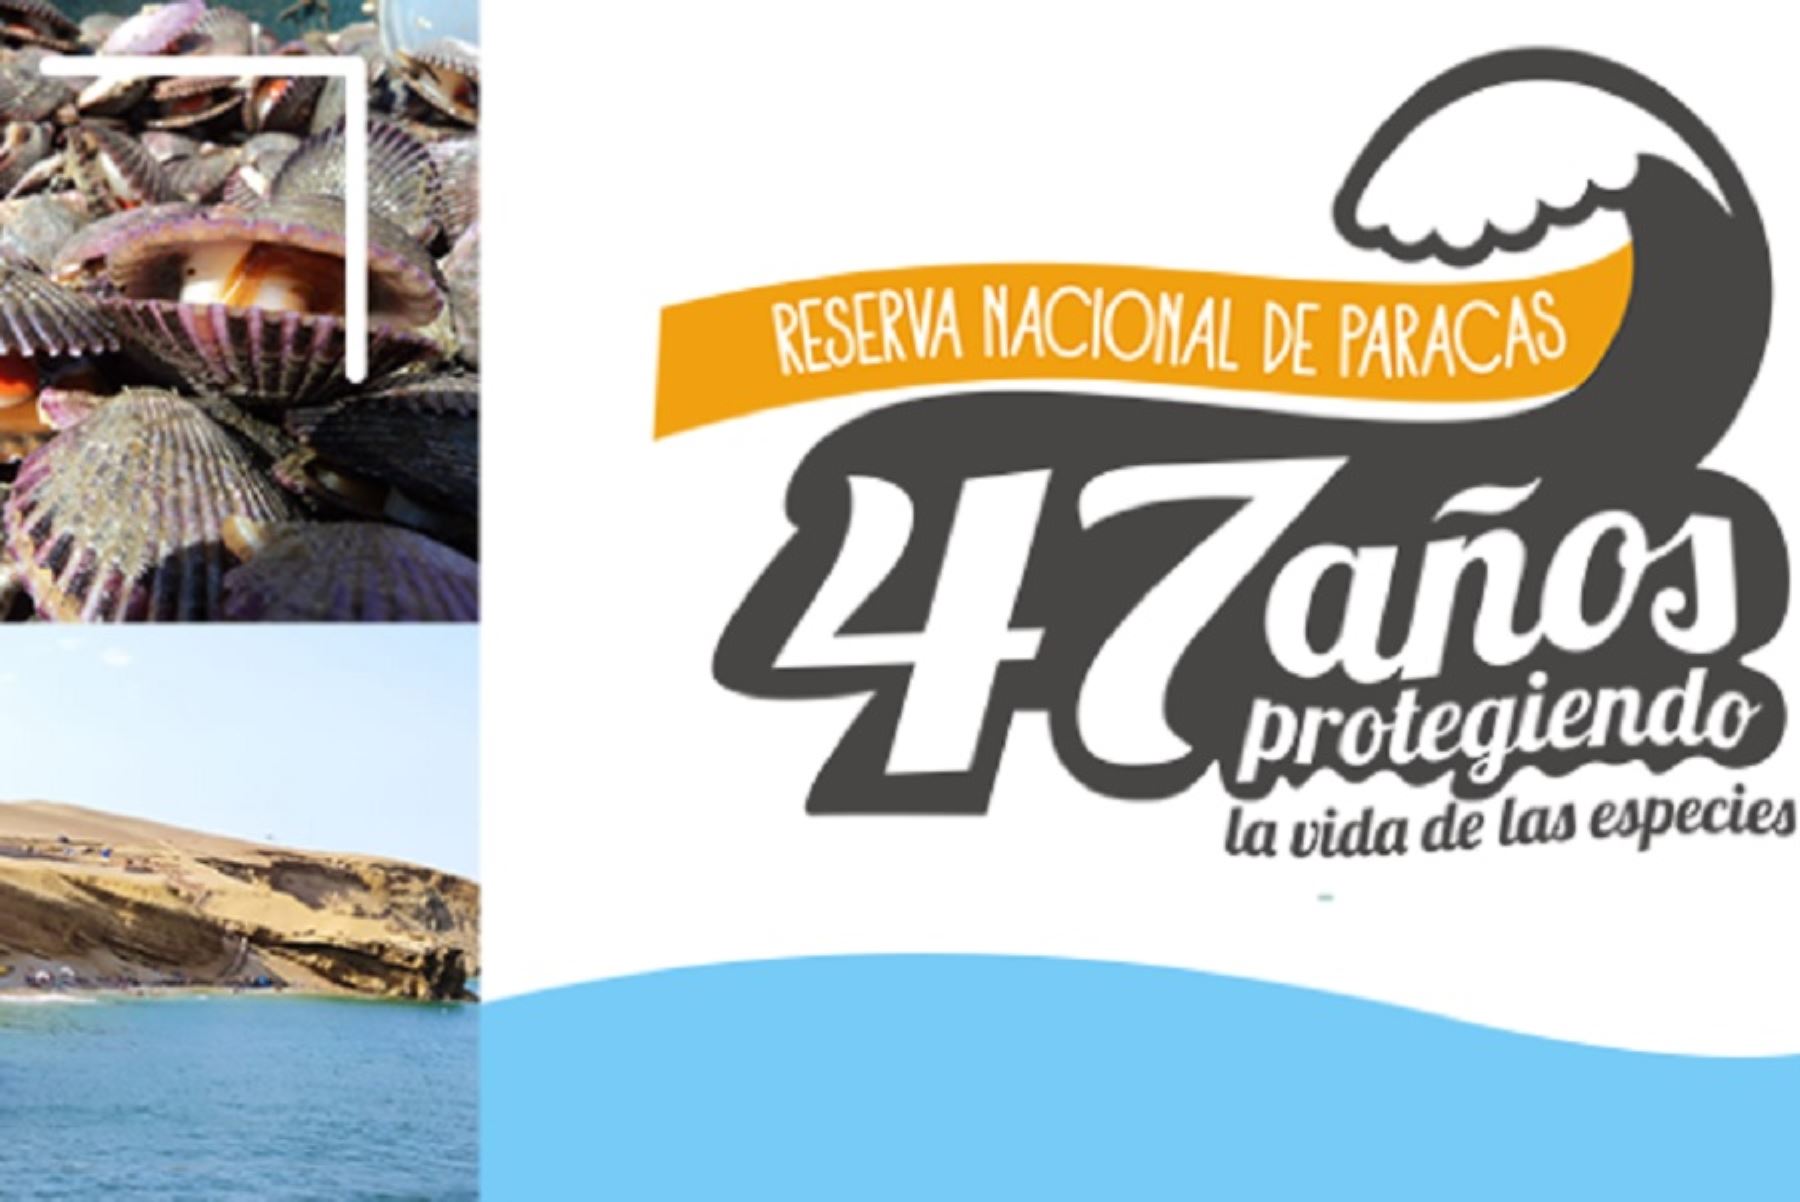 La Reserva Nacional de Paracas celebrará, el próximo 25 de setiembre, su 47° aniversario como una de las áreas naturales protegidas que permite apreciar la enorme belleza paisajística y singular biodiversidad que existe en el ámbito marino y costero de la región Ica.